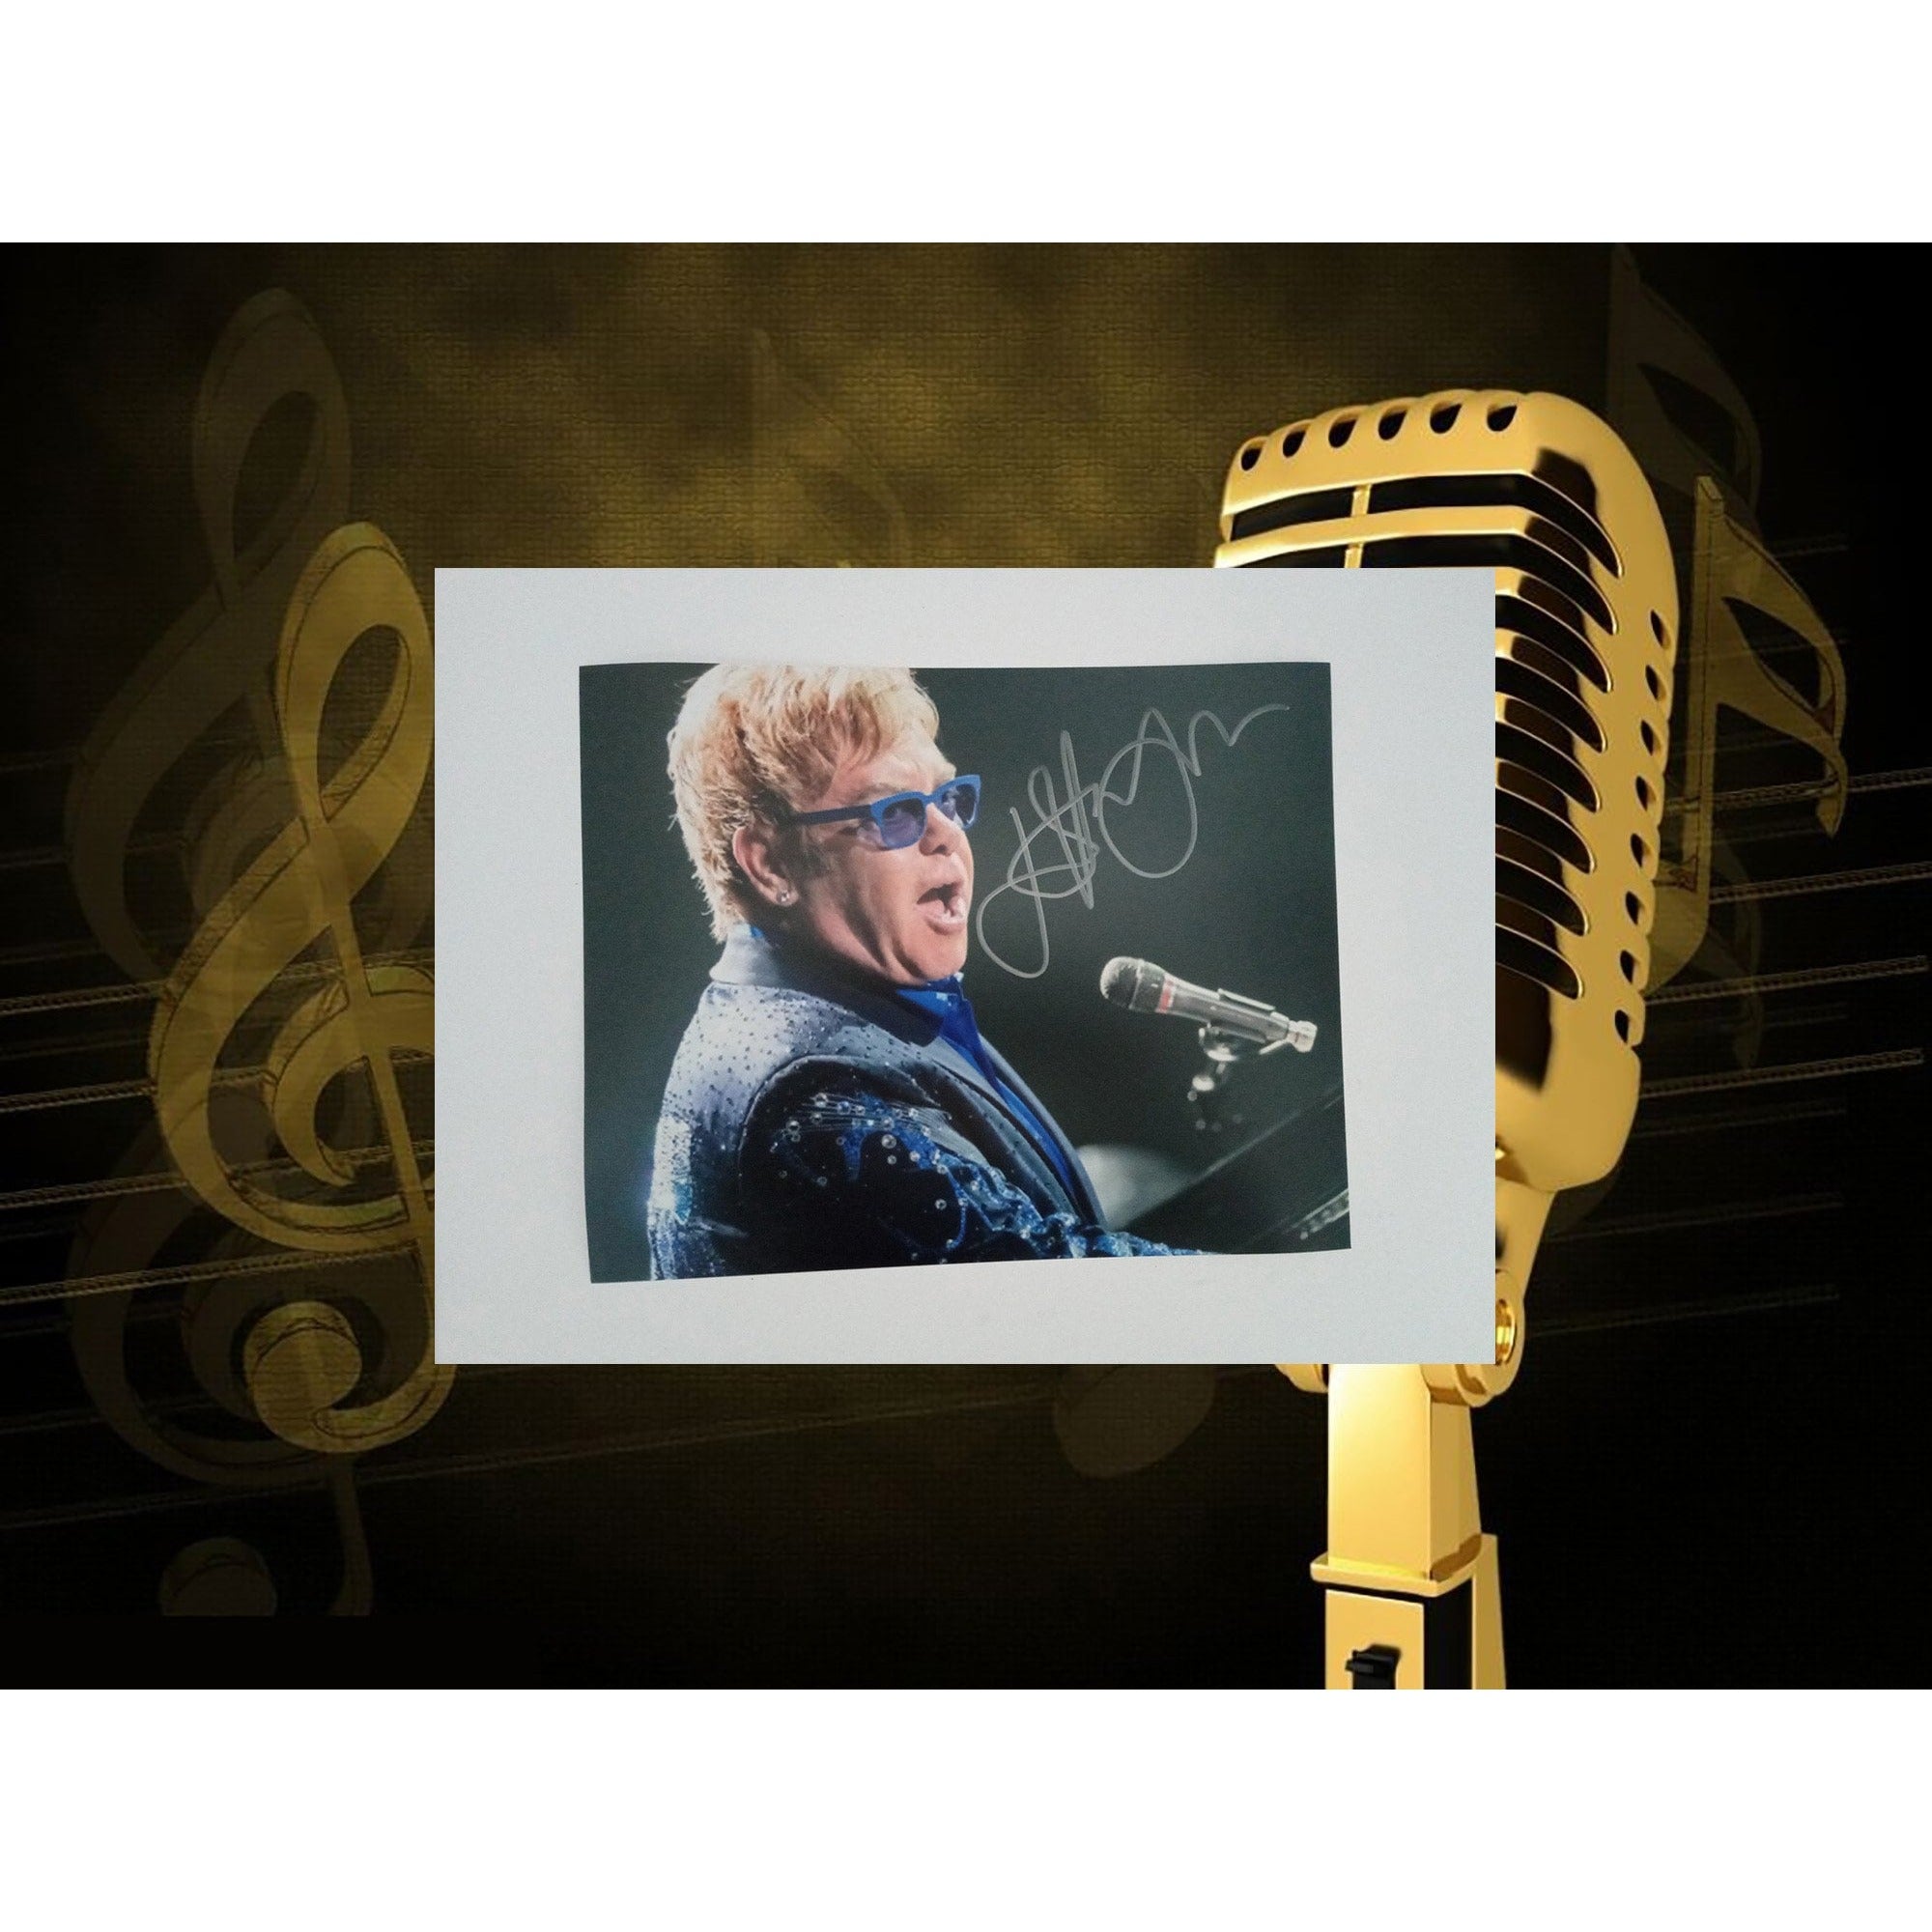 Elton John 8 x 10 signed photo with proof